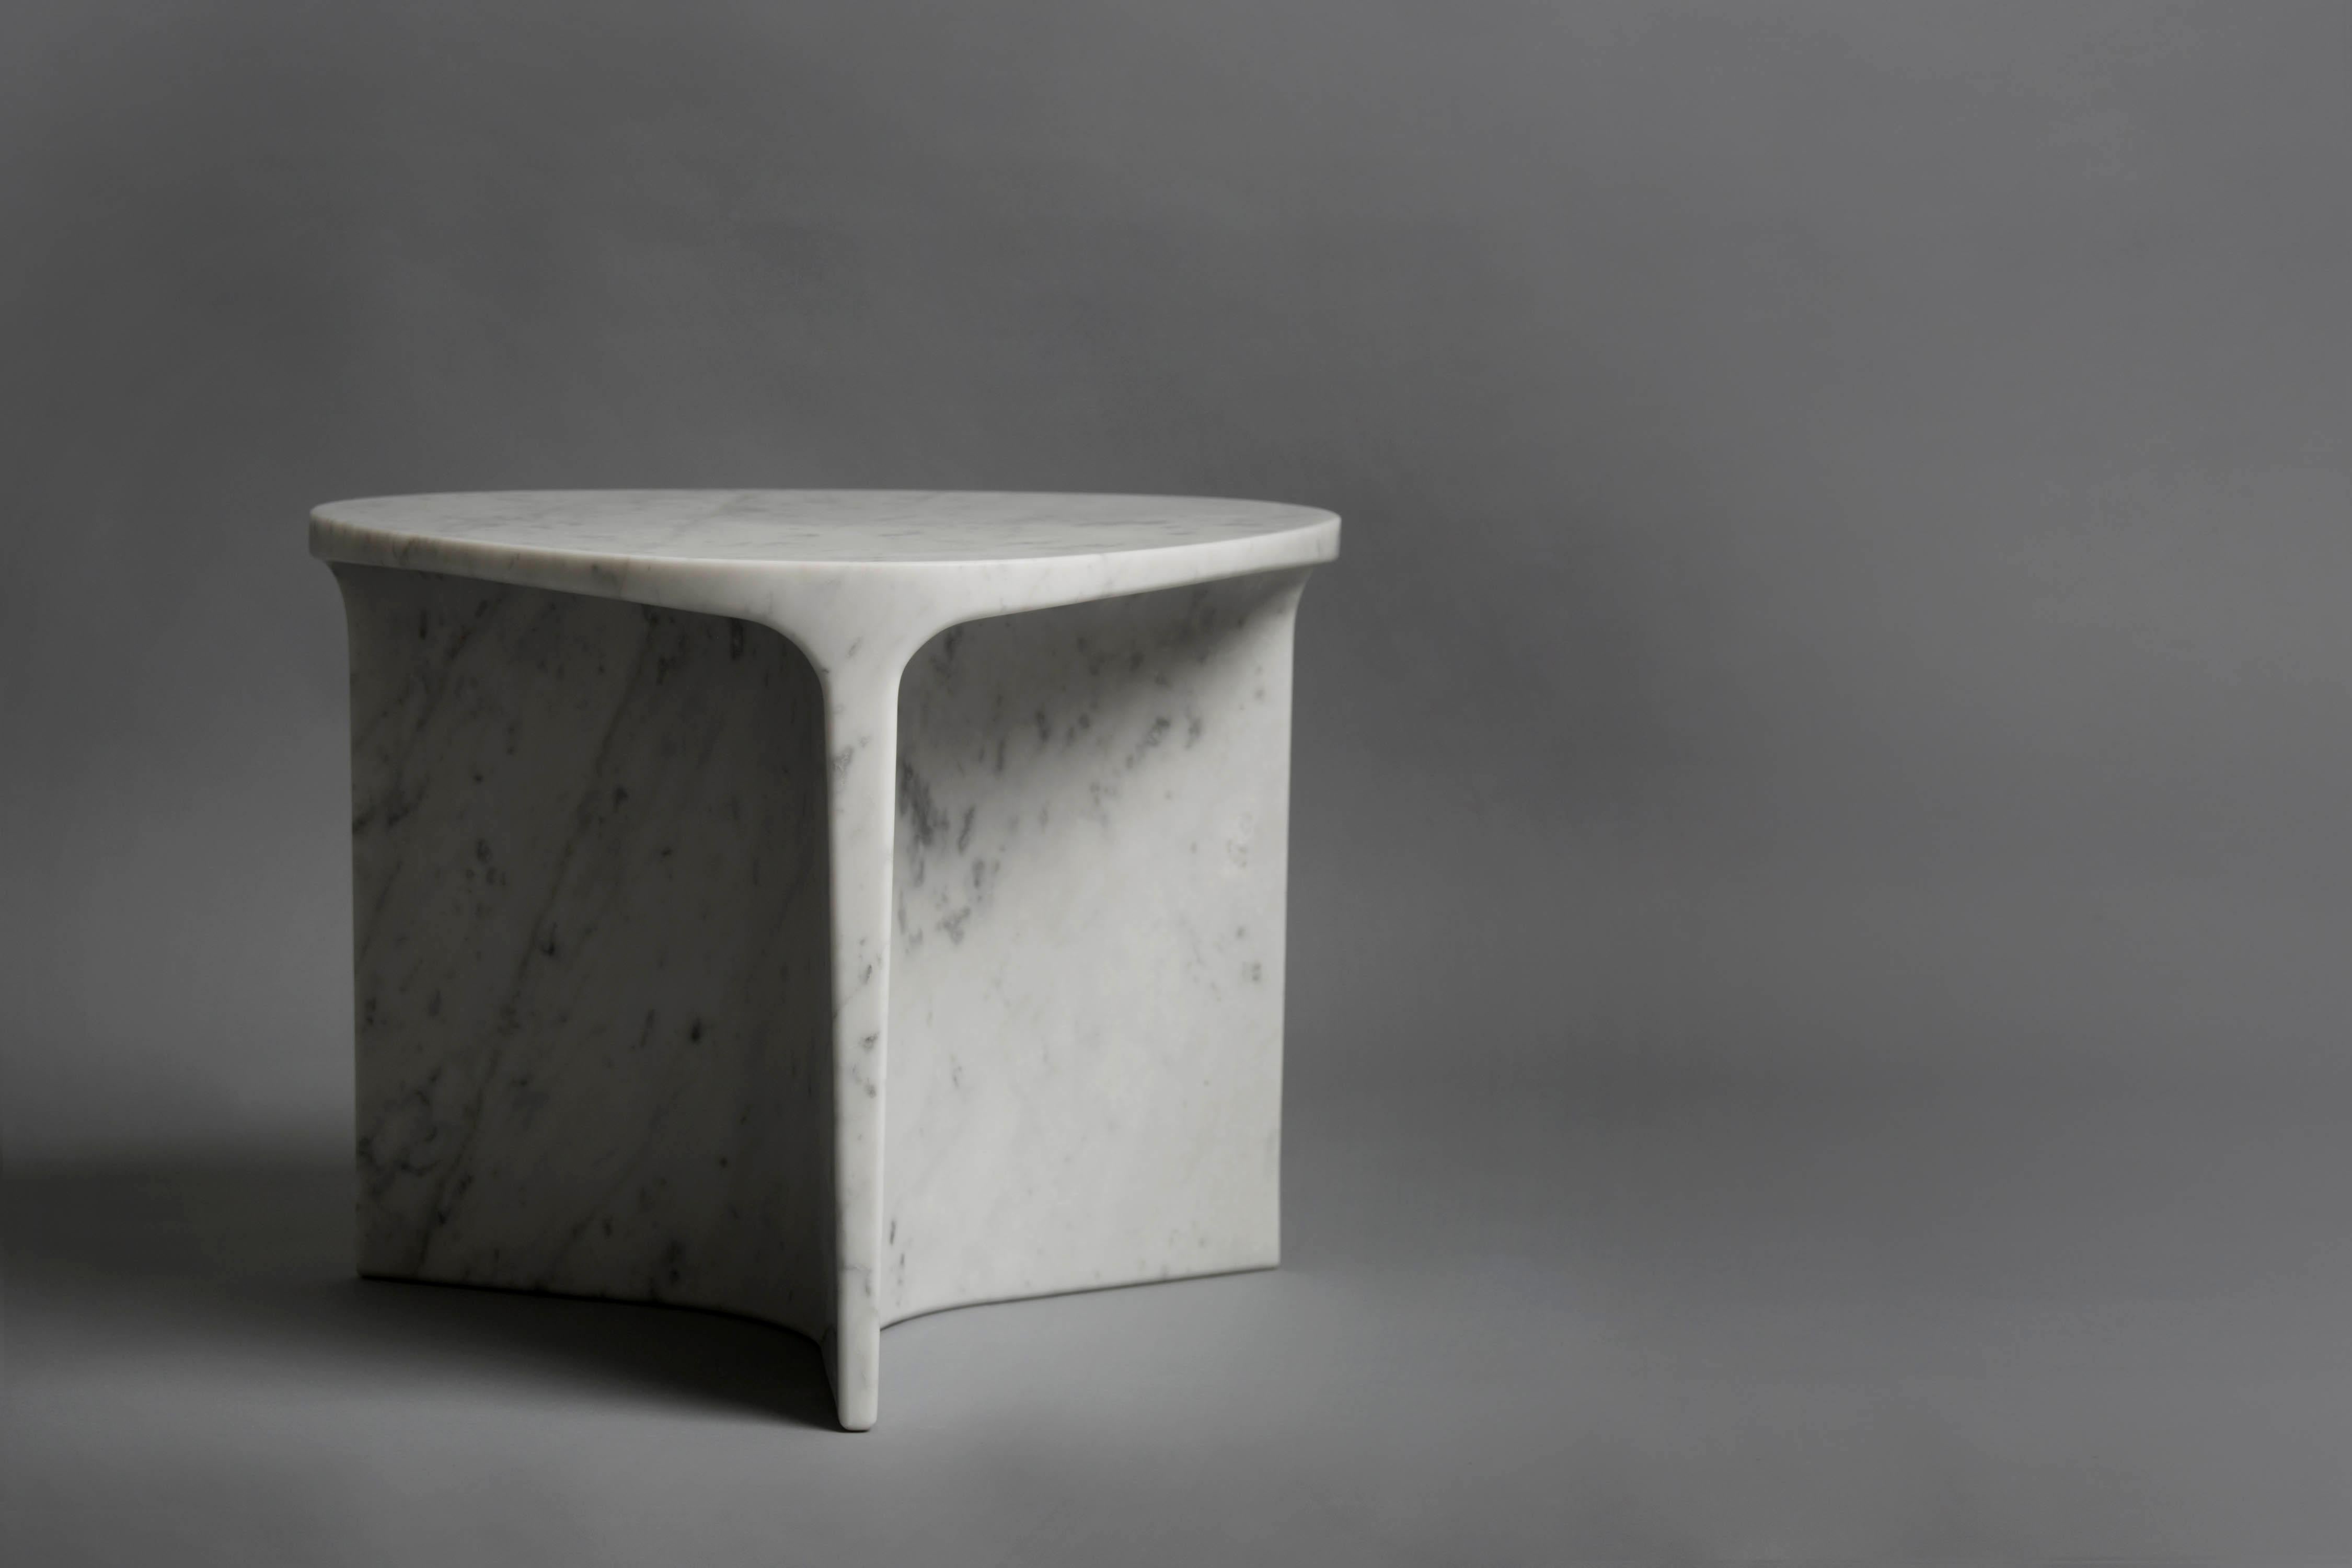 Carv Beistelltisch ist aus einem einzigen Block italienischen Carrara-Marmors geschnitten.
Wesentliches und organisches Design, das auf natürliche Weise eine flache, fließende Tischplatte schafft
zu einem Y-förmigen Fuß, der die Adern des Steins